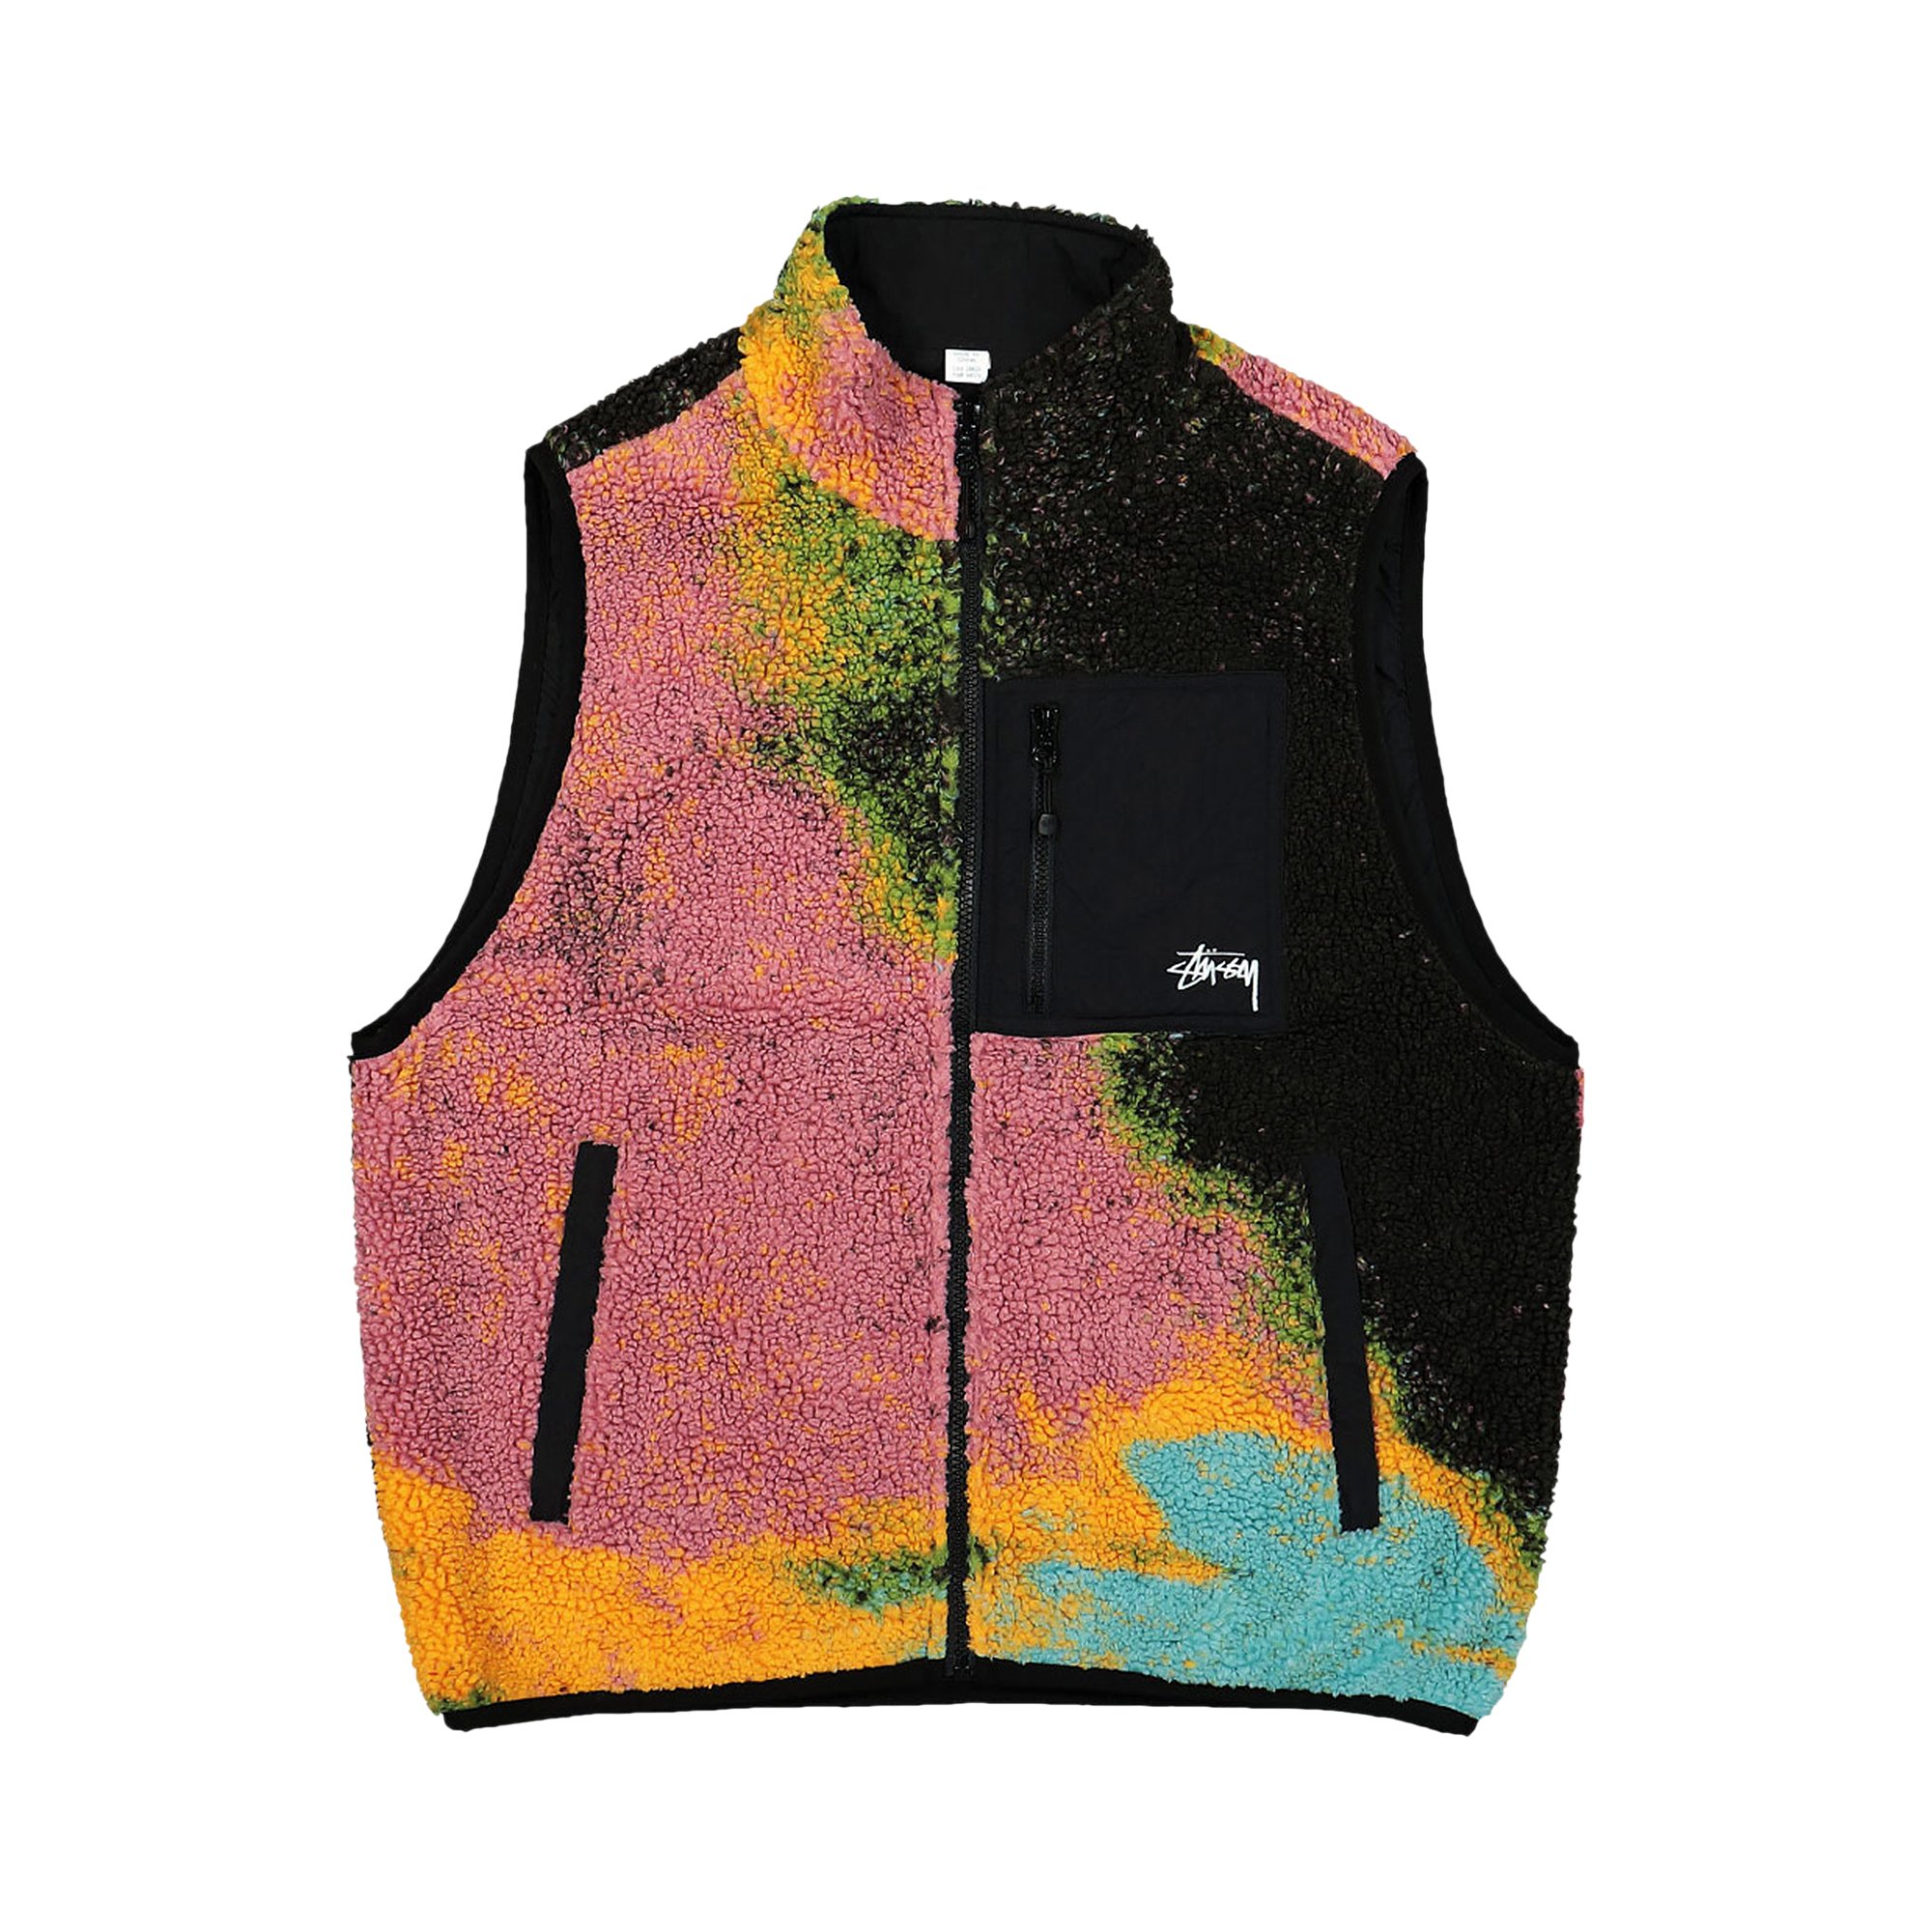 Buy Stussy Jacquard Dye Sherpa Vest 'Berry' - 118503 BERR | GOAT